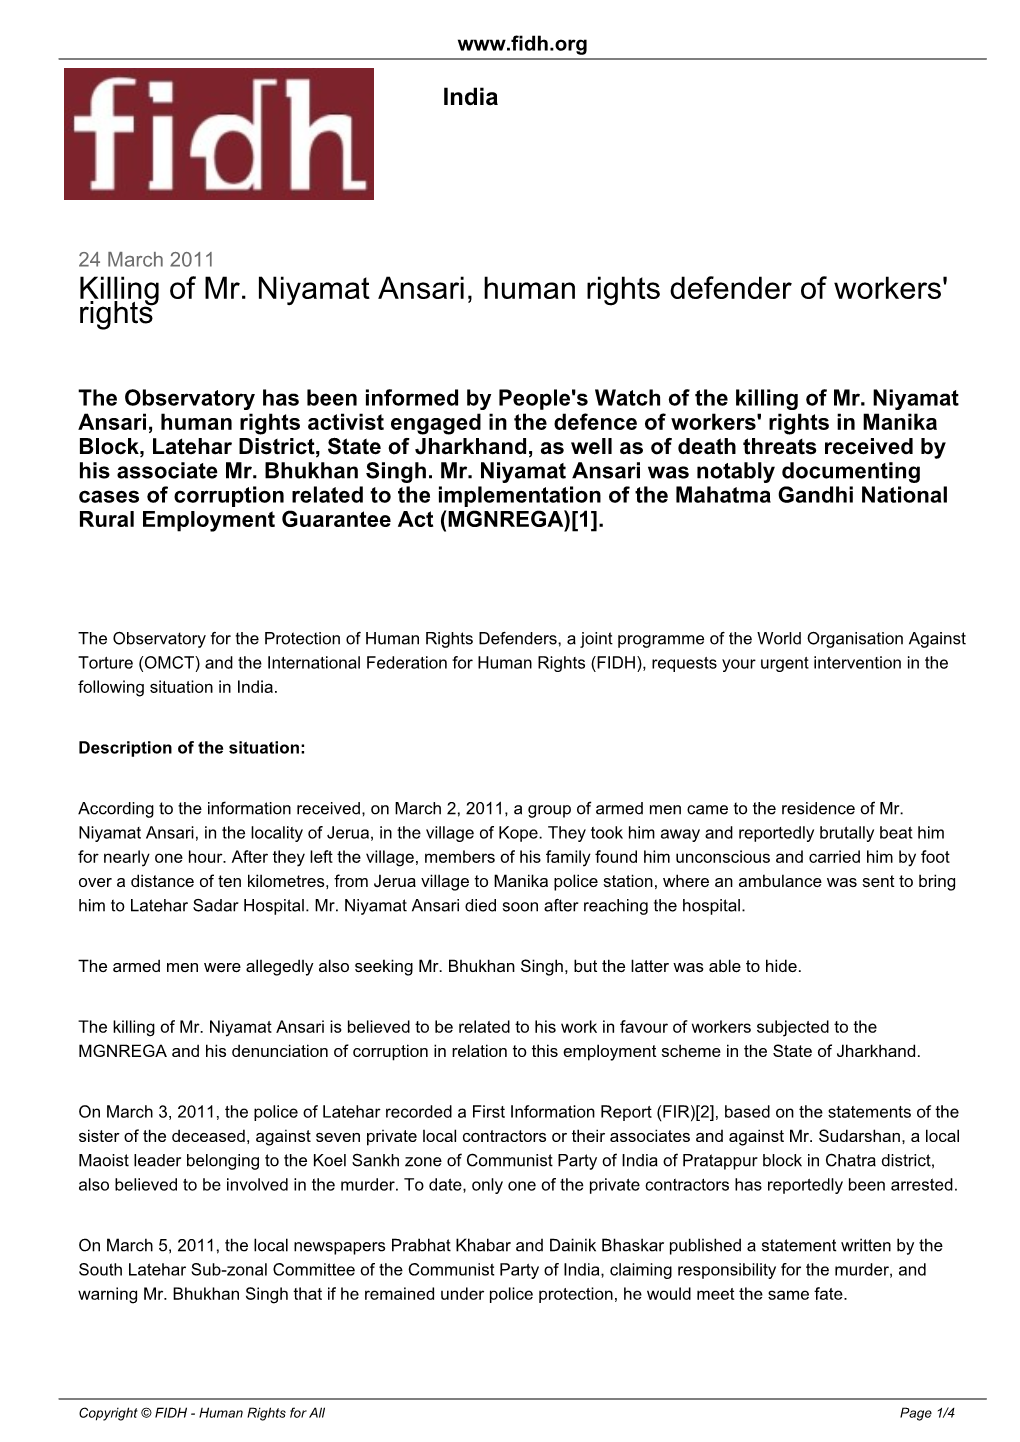 Killing of Mr. Niyamat Ansari, Human Rights Defender of Workers' Rights